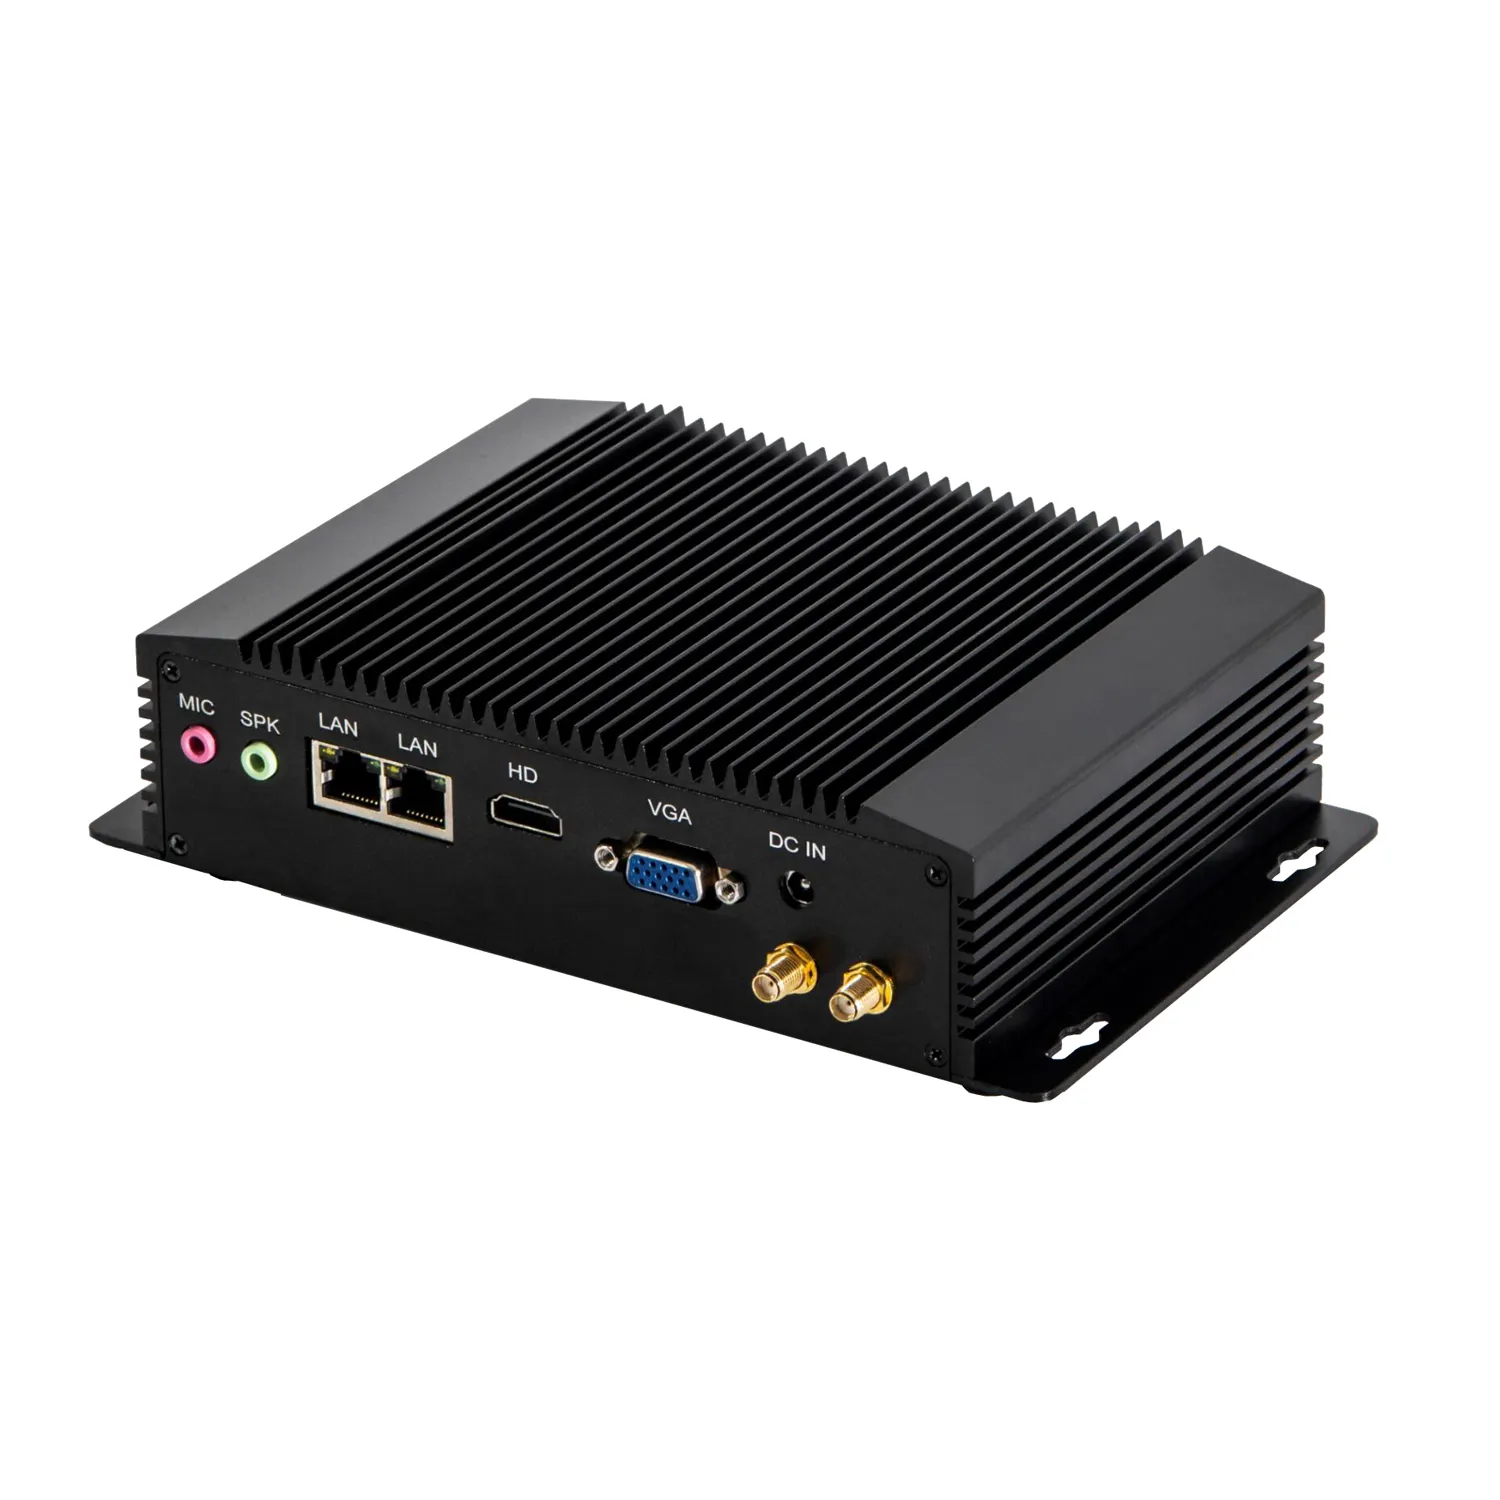 Недорогой тонкий клиентский мини-ПК 2 LAN N3520 pfsense, серверный маршрутизатор Win10 ioT, шлюз POS RS485 4G SIM Linux, безвентиляторный промышленный компьютер